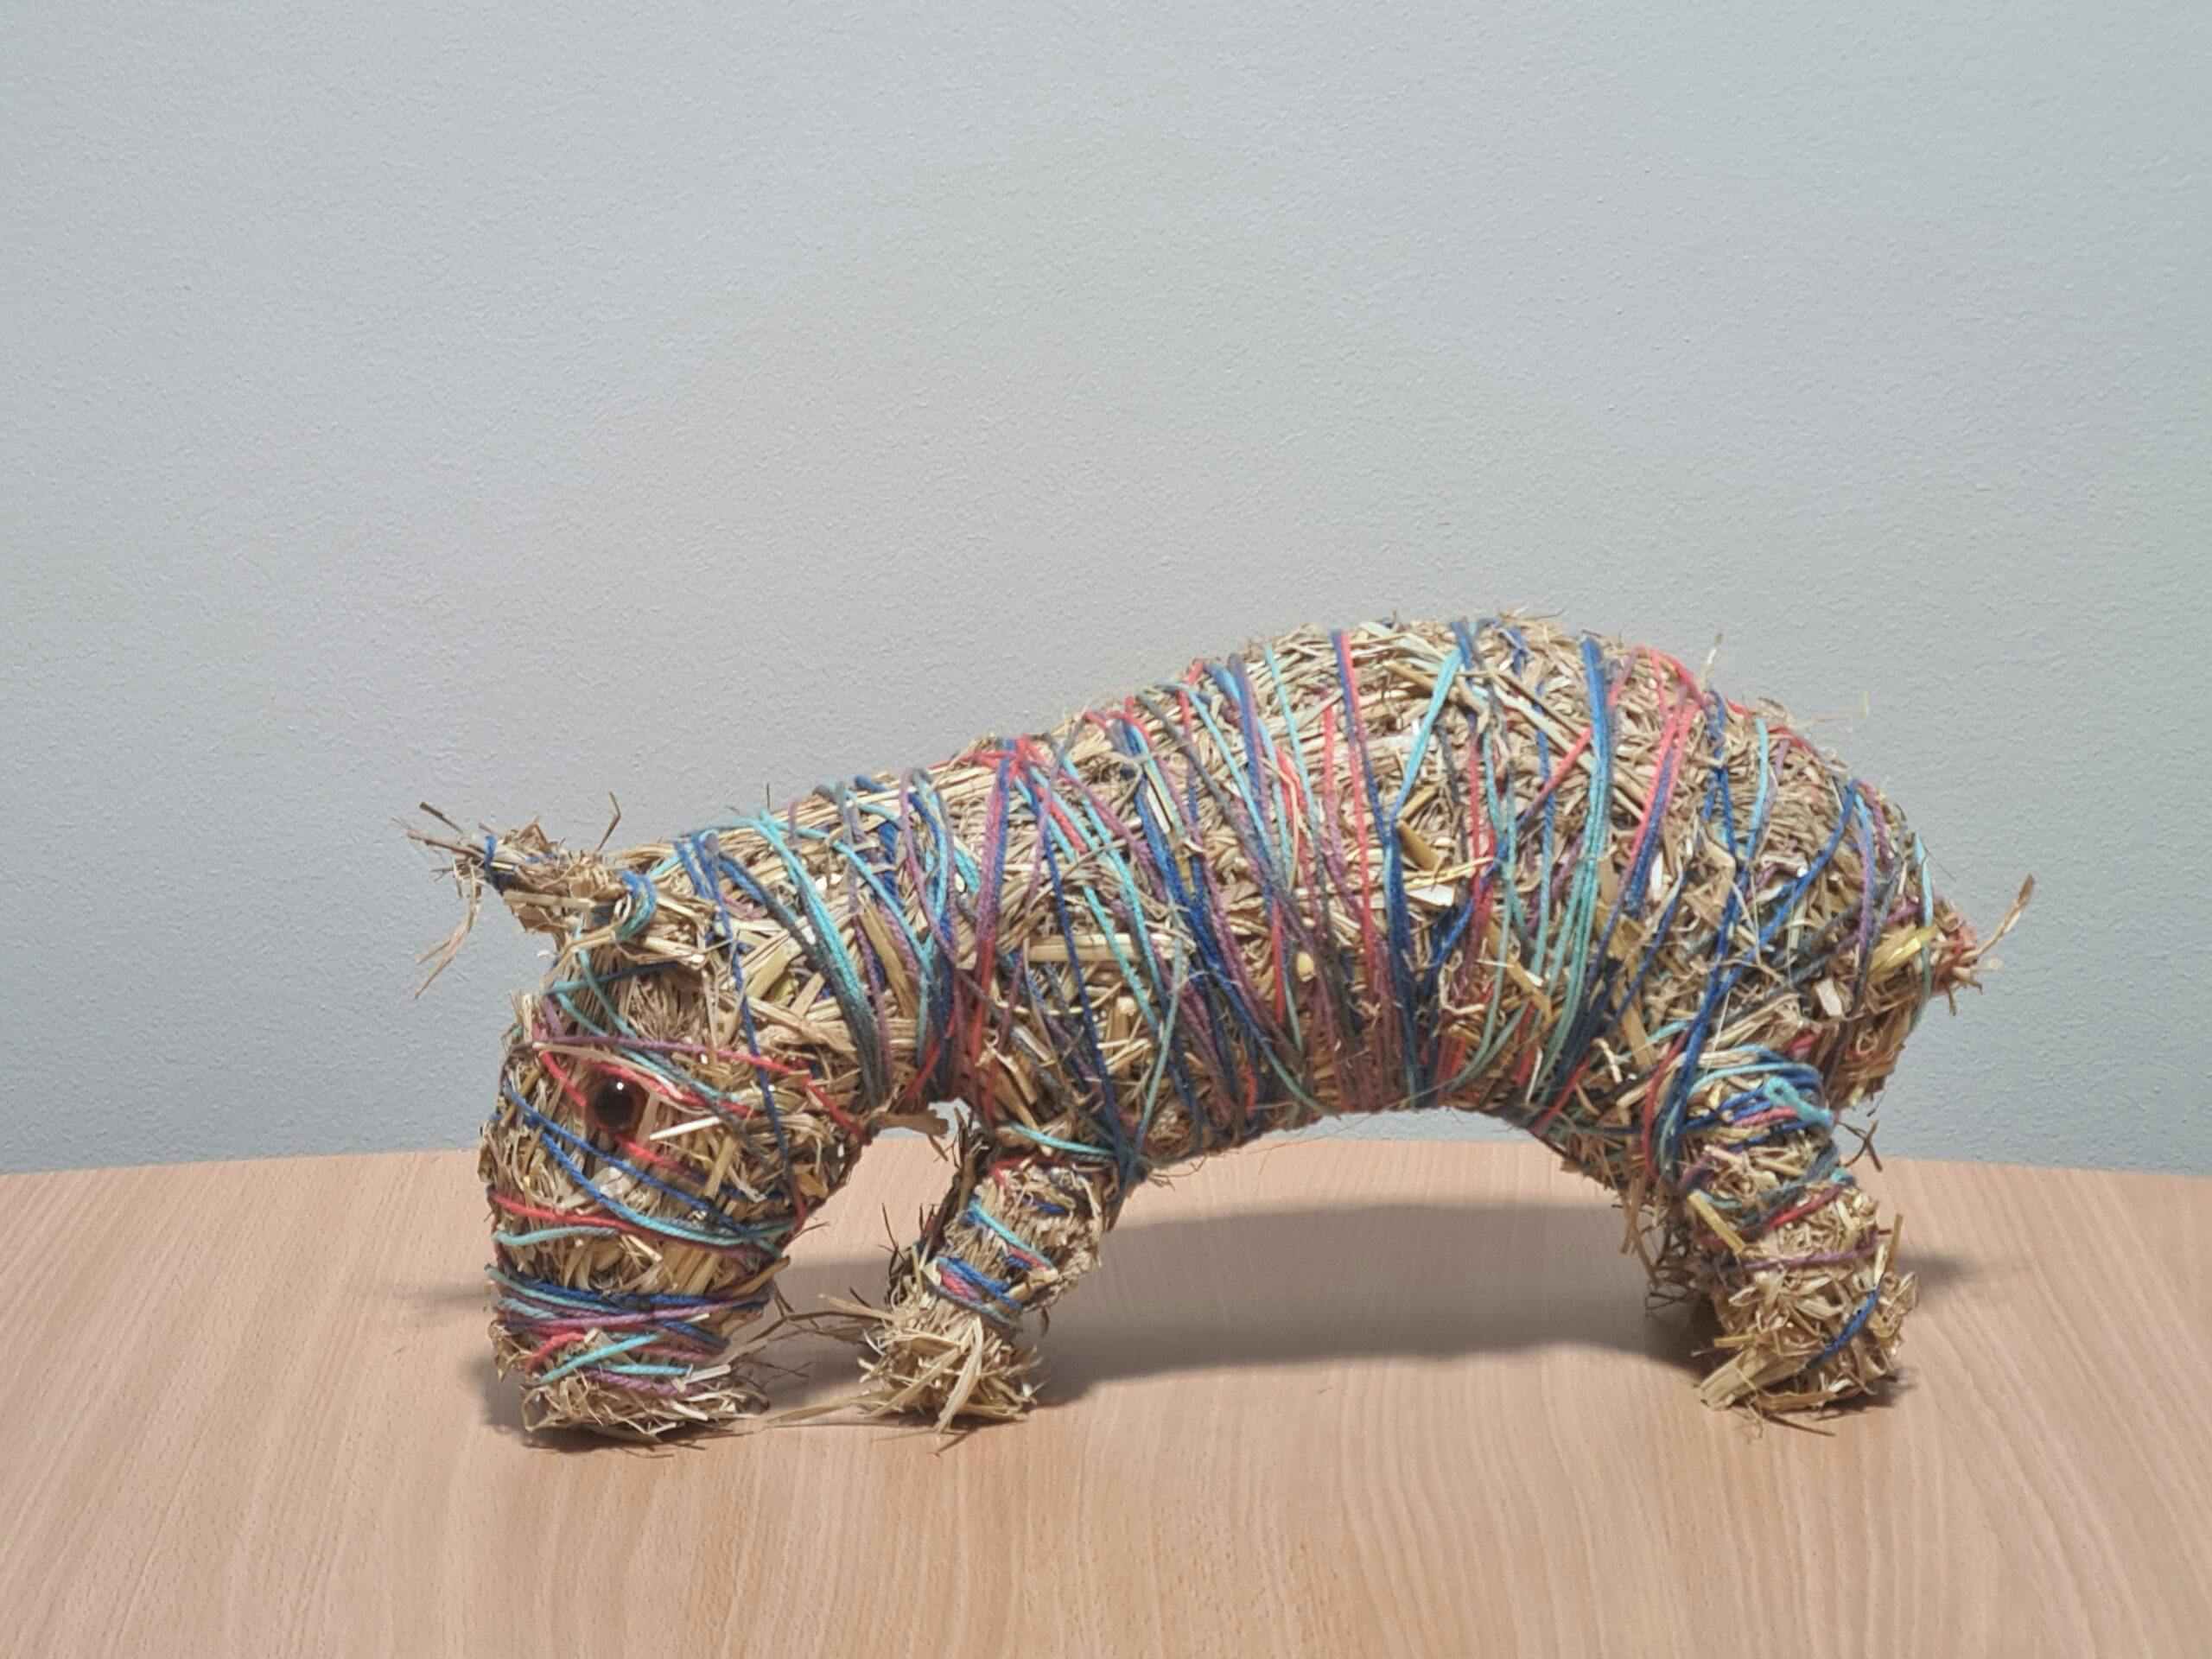 ‘Bush Animal 2 (Wombat) by Bronwyn Razem, hay and wool, 20.0 x 40.0 x 14.0 cm